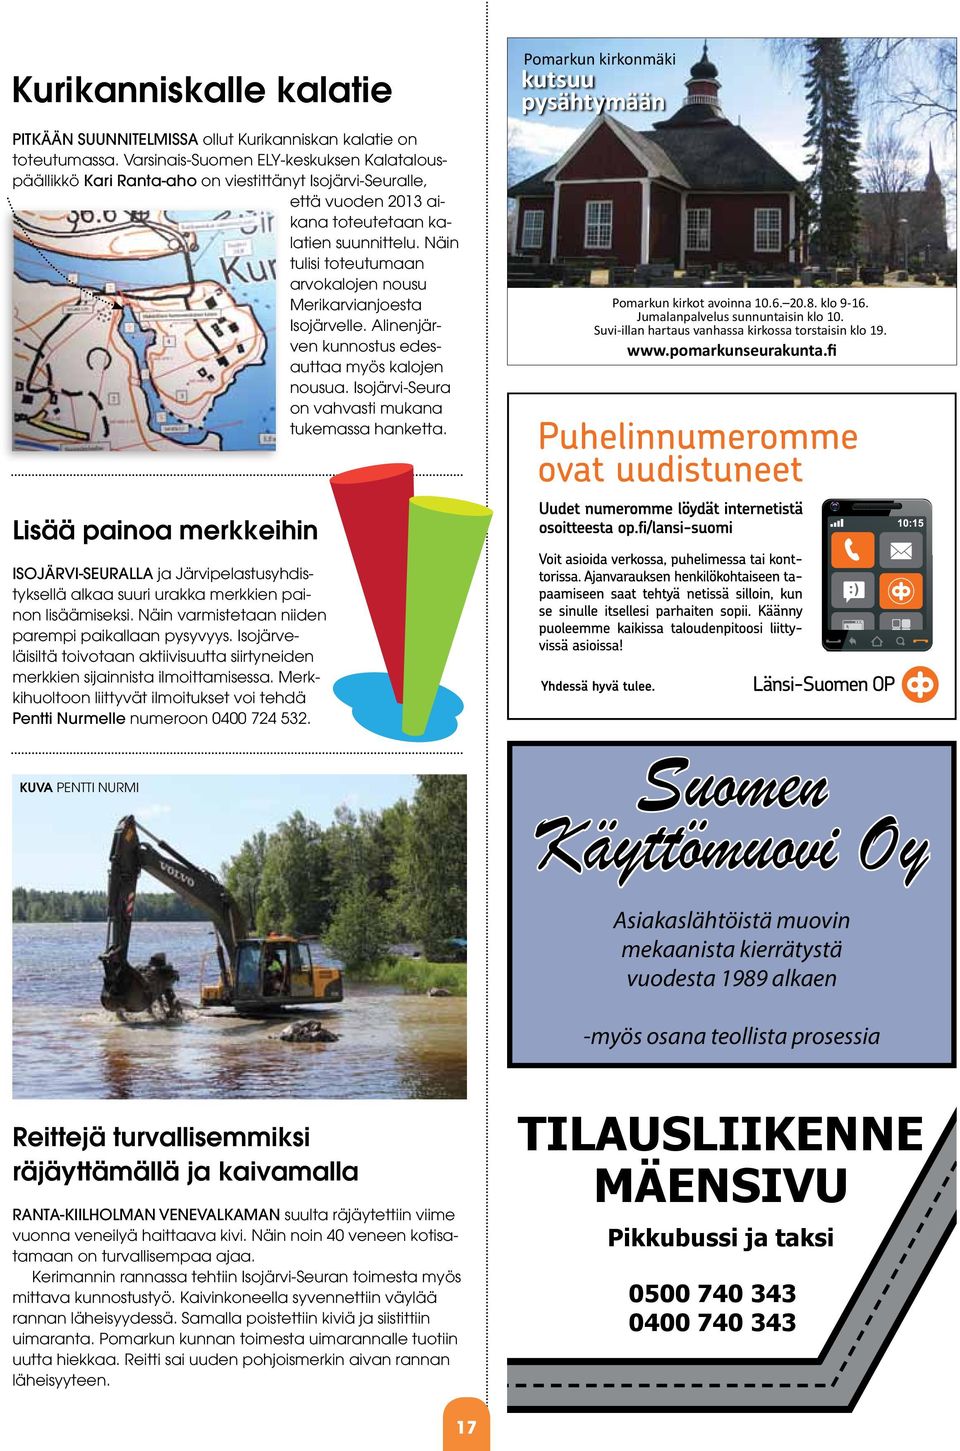 Näin tulisi toteutumaan arvokalojen nousu Merikarvianjoesta Isojärvelle. Alinenjärven kunnostus edesauttaa myös kalojen nousua. Isojärvi-Seura on vahvasti mukana tukemassa hanketta.